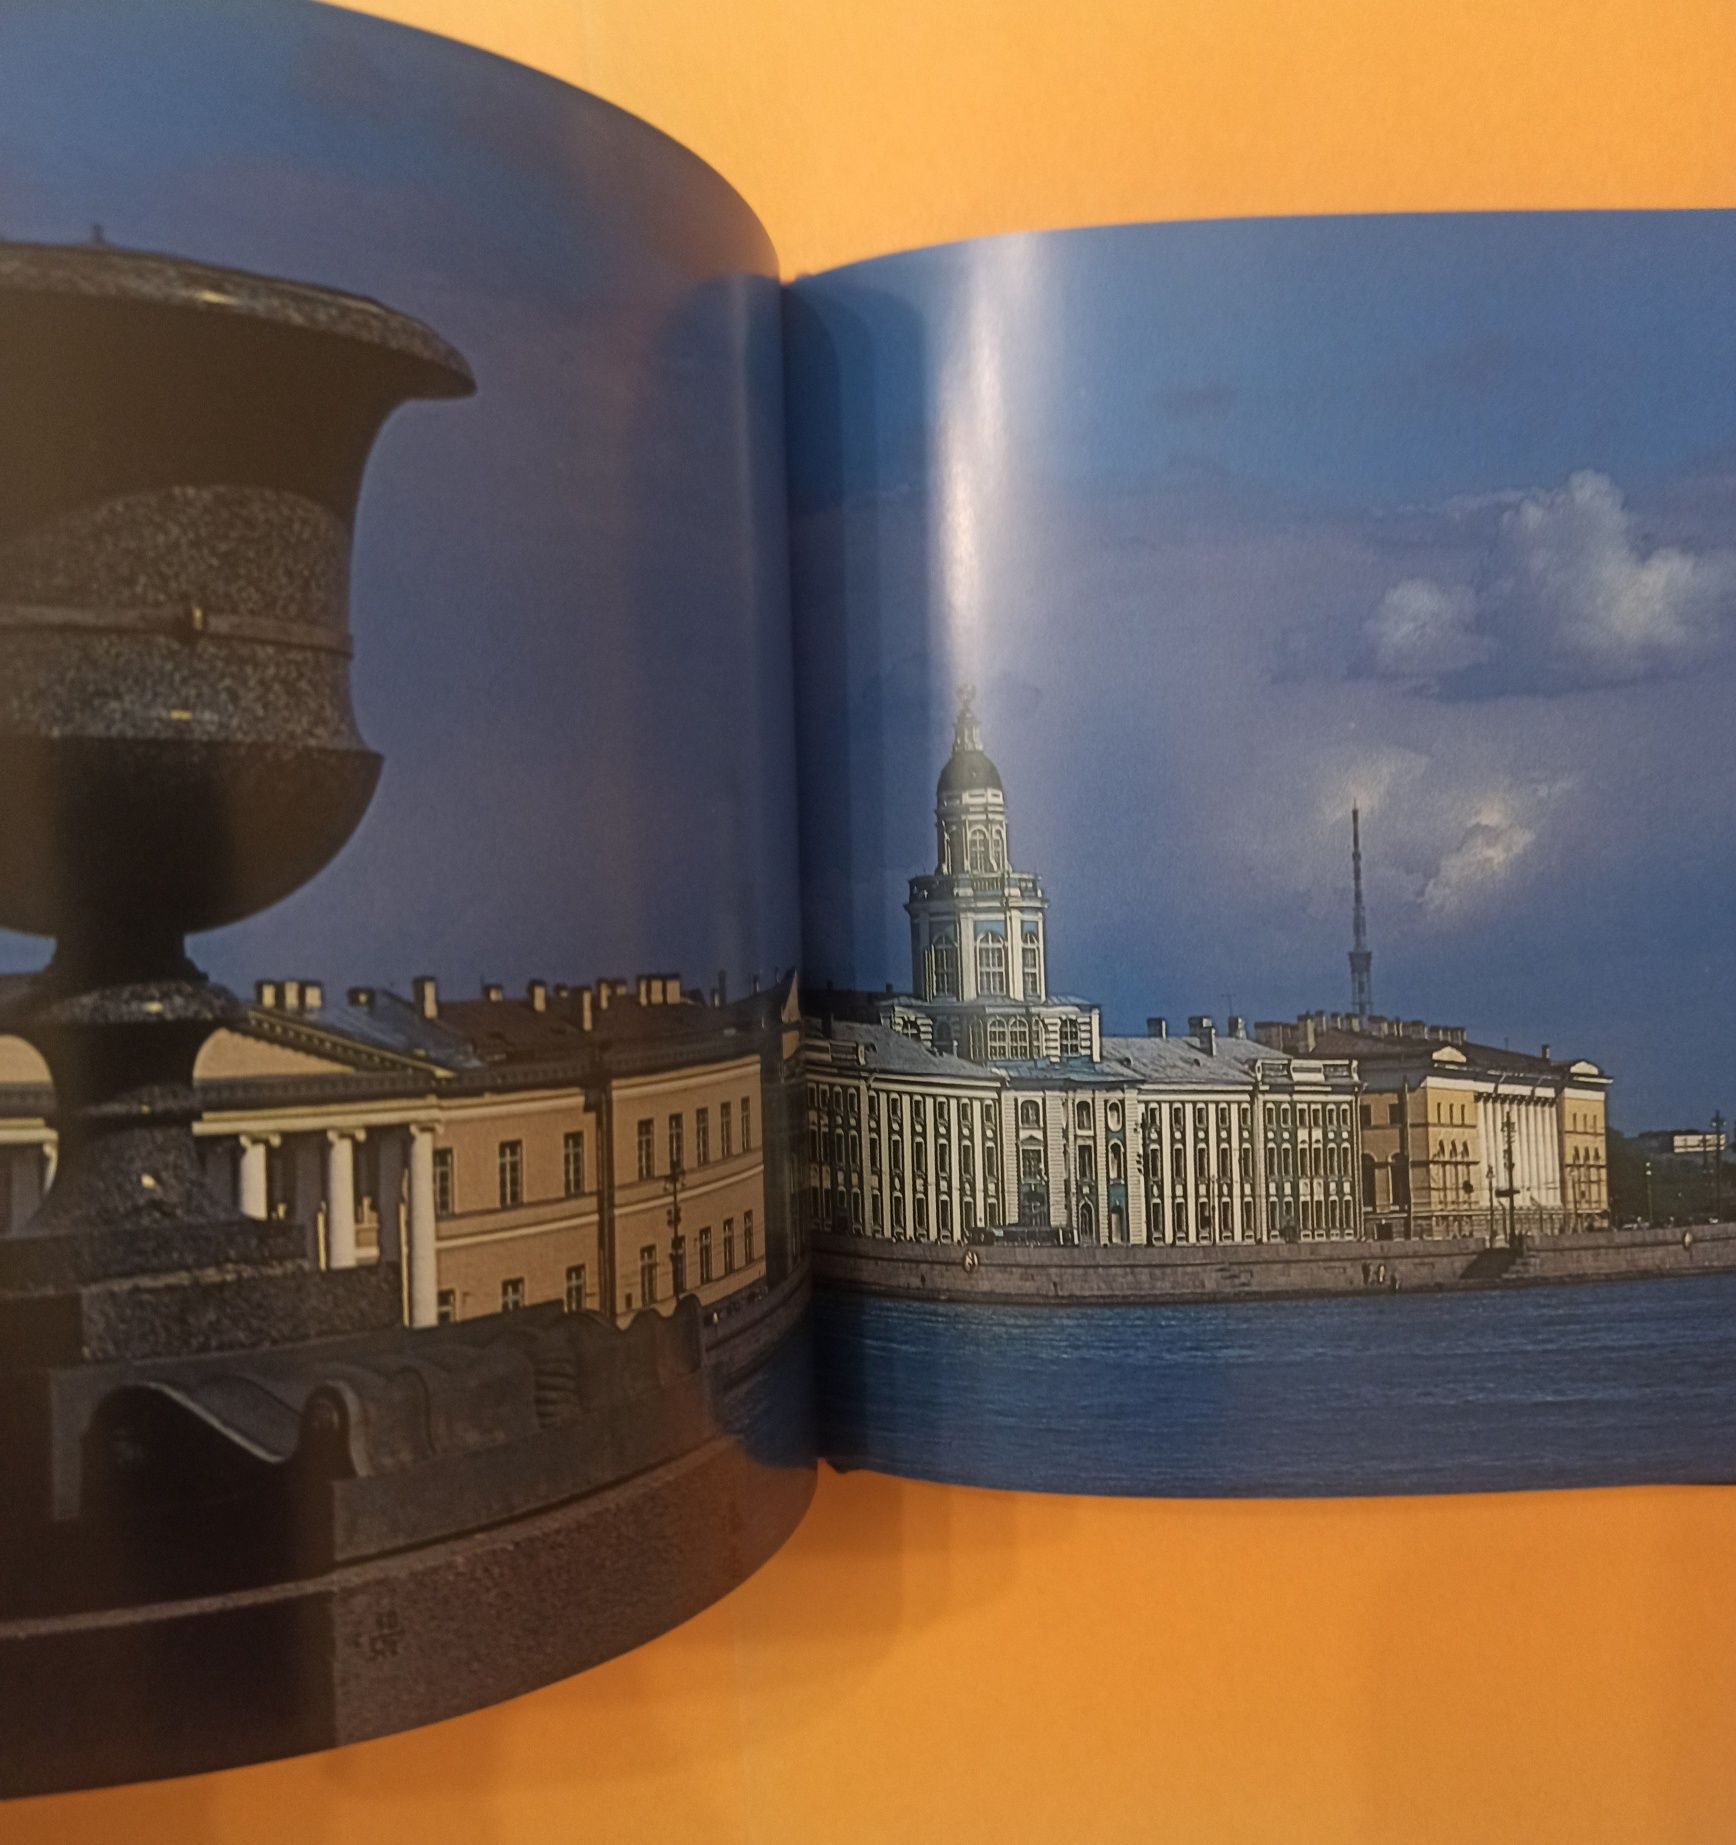 Petersburg. Album